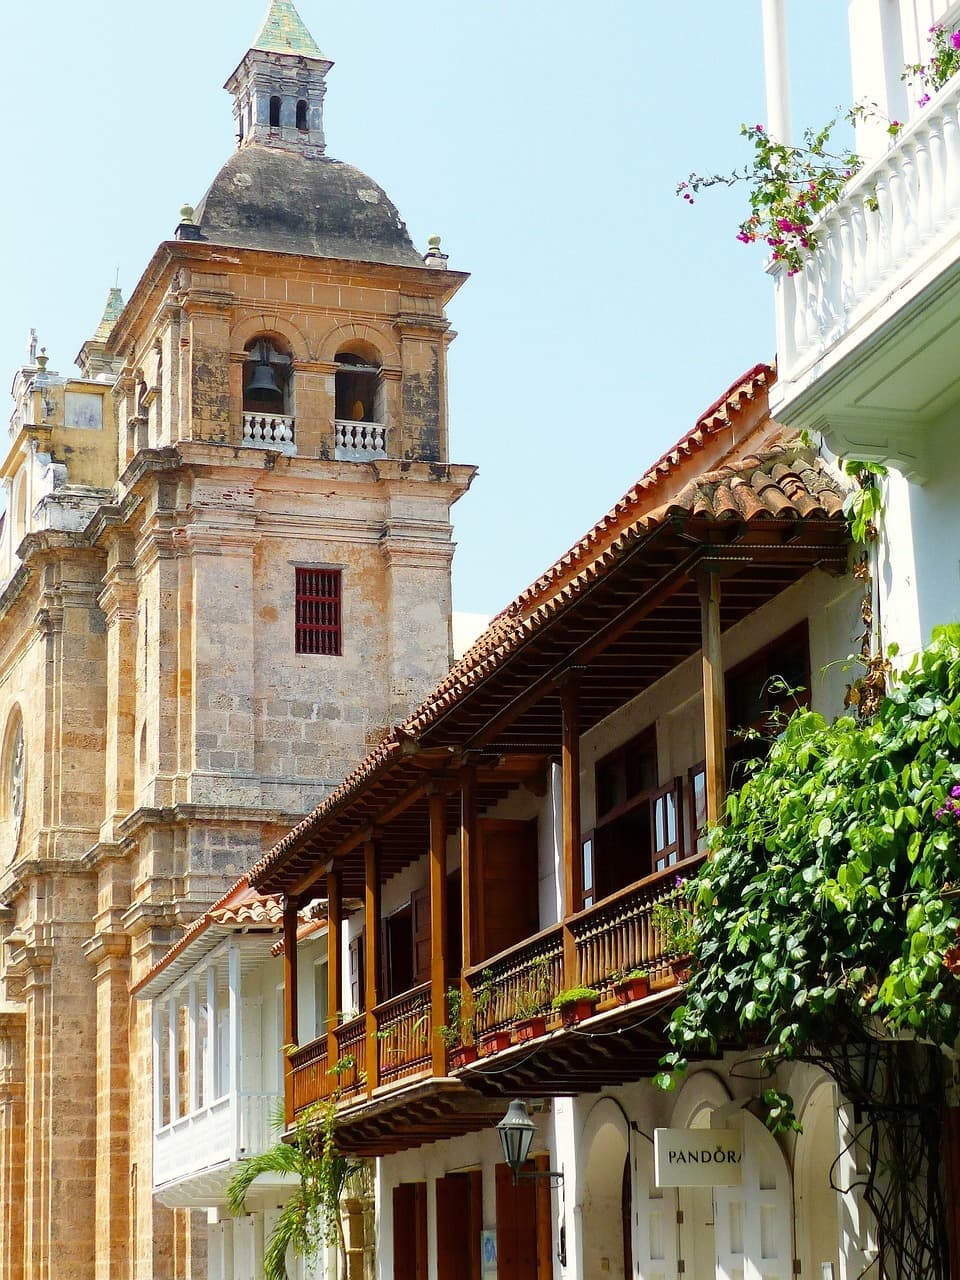 Descubre las exclusivas tendencias de viajes de lujo en Colombia